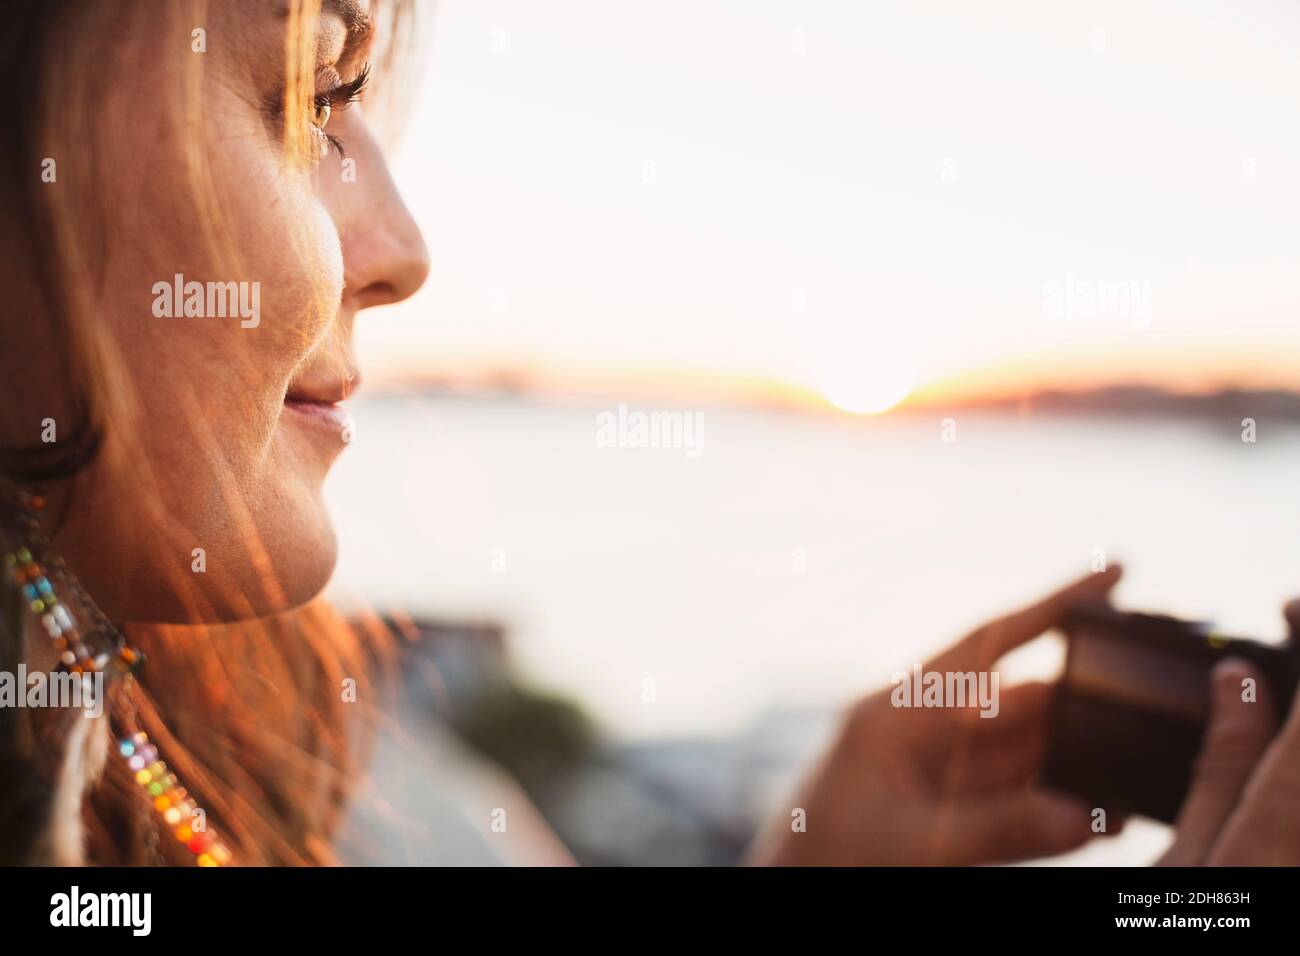 Immagine ritagliata del turista femminile che guarda via mentre tiene il digitale fotocamera contro il cielo limpido Foto Stock